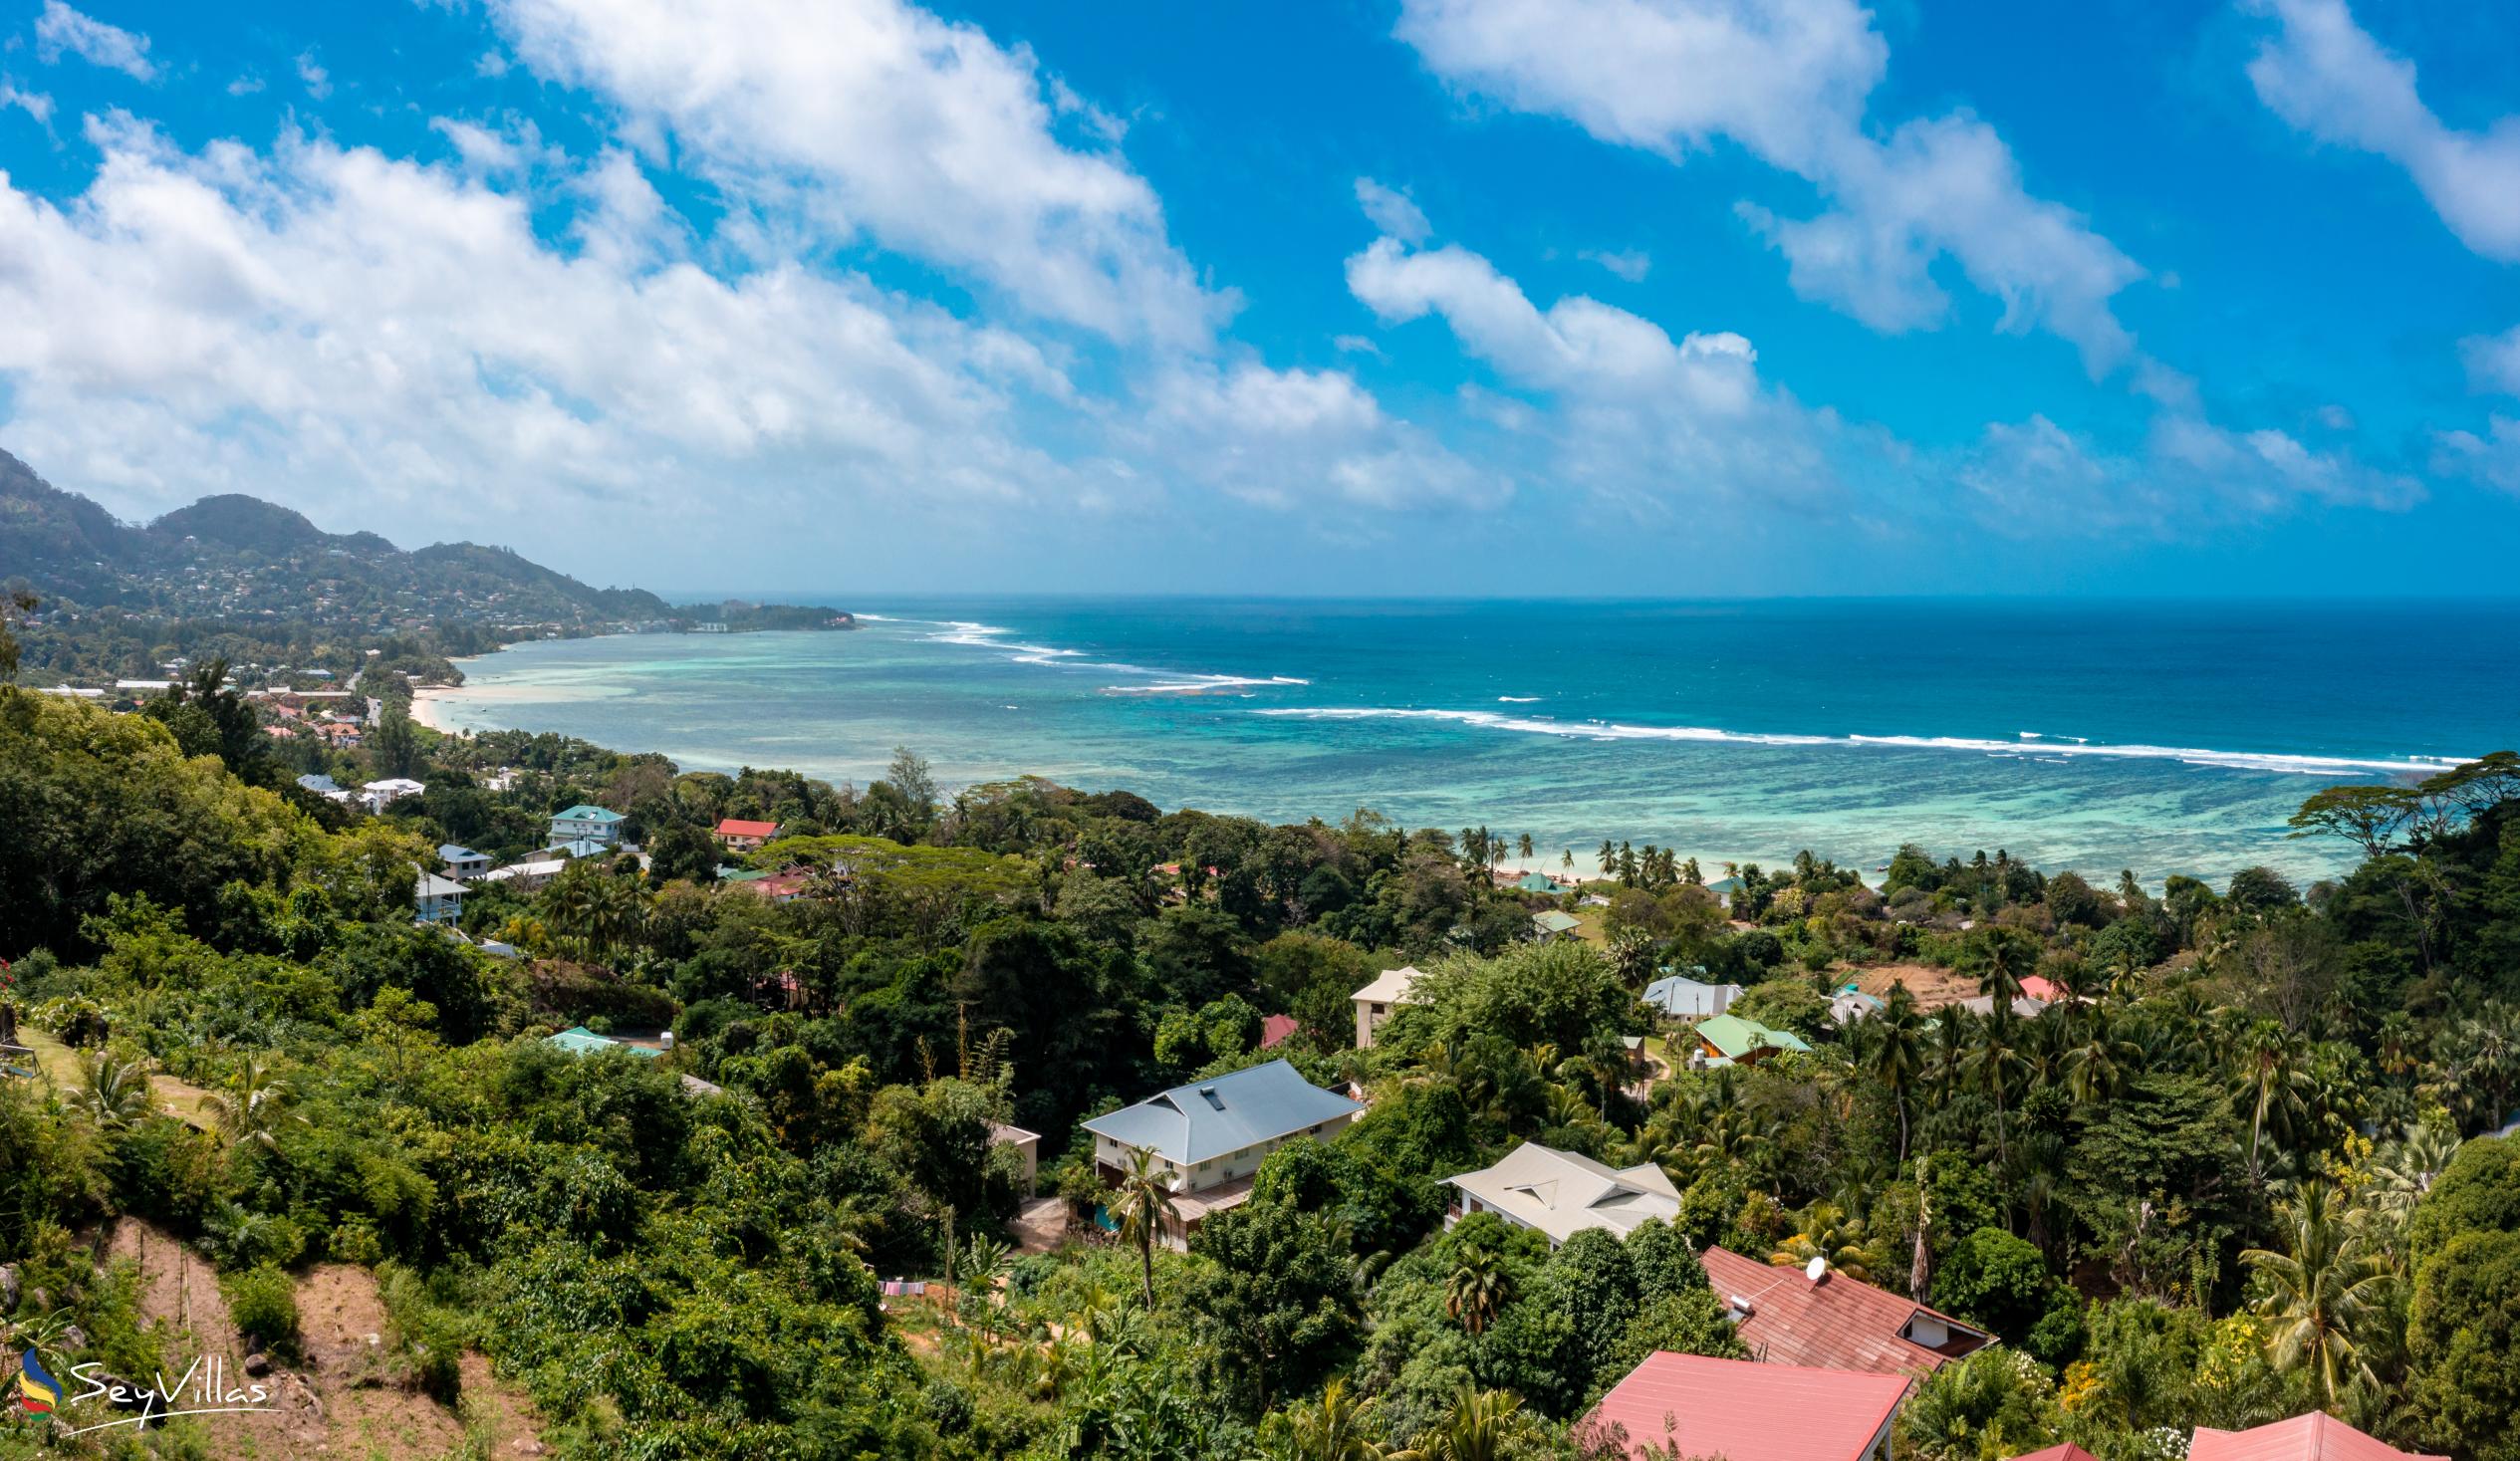 Foto 4: East Horizon - Aussenbereich - Mahé (Seychellen)